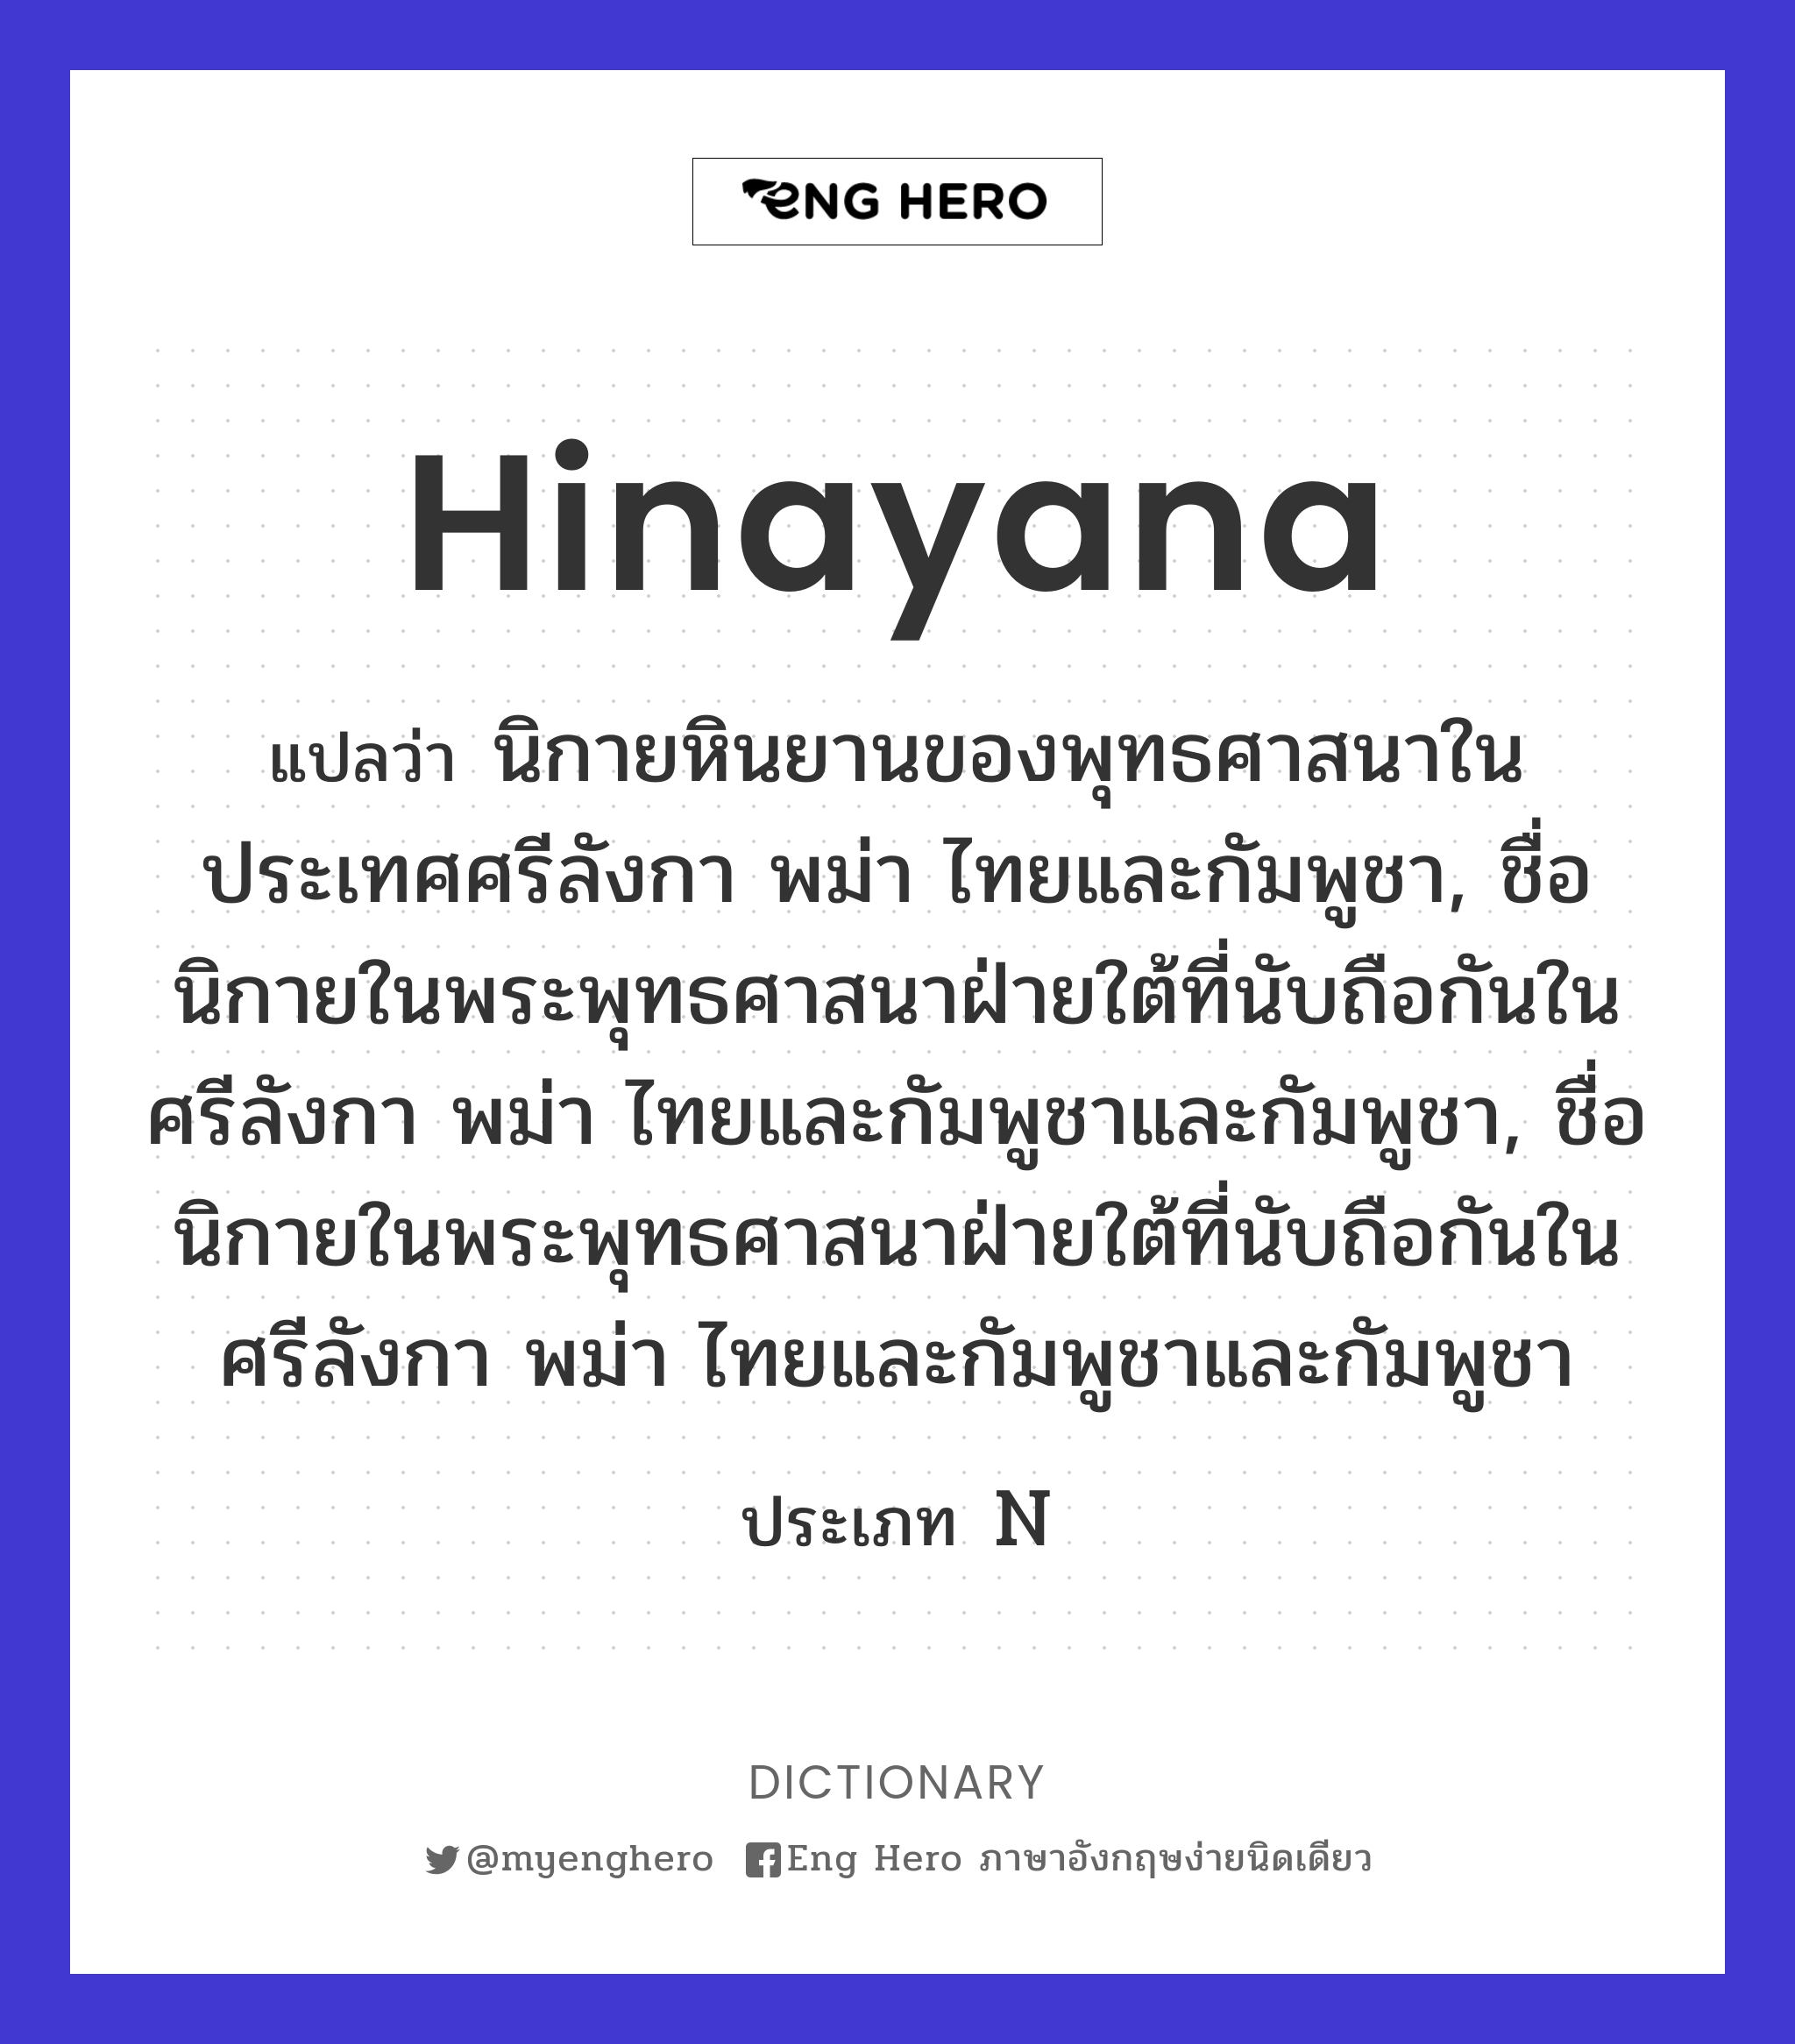 Hinayana